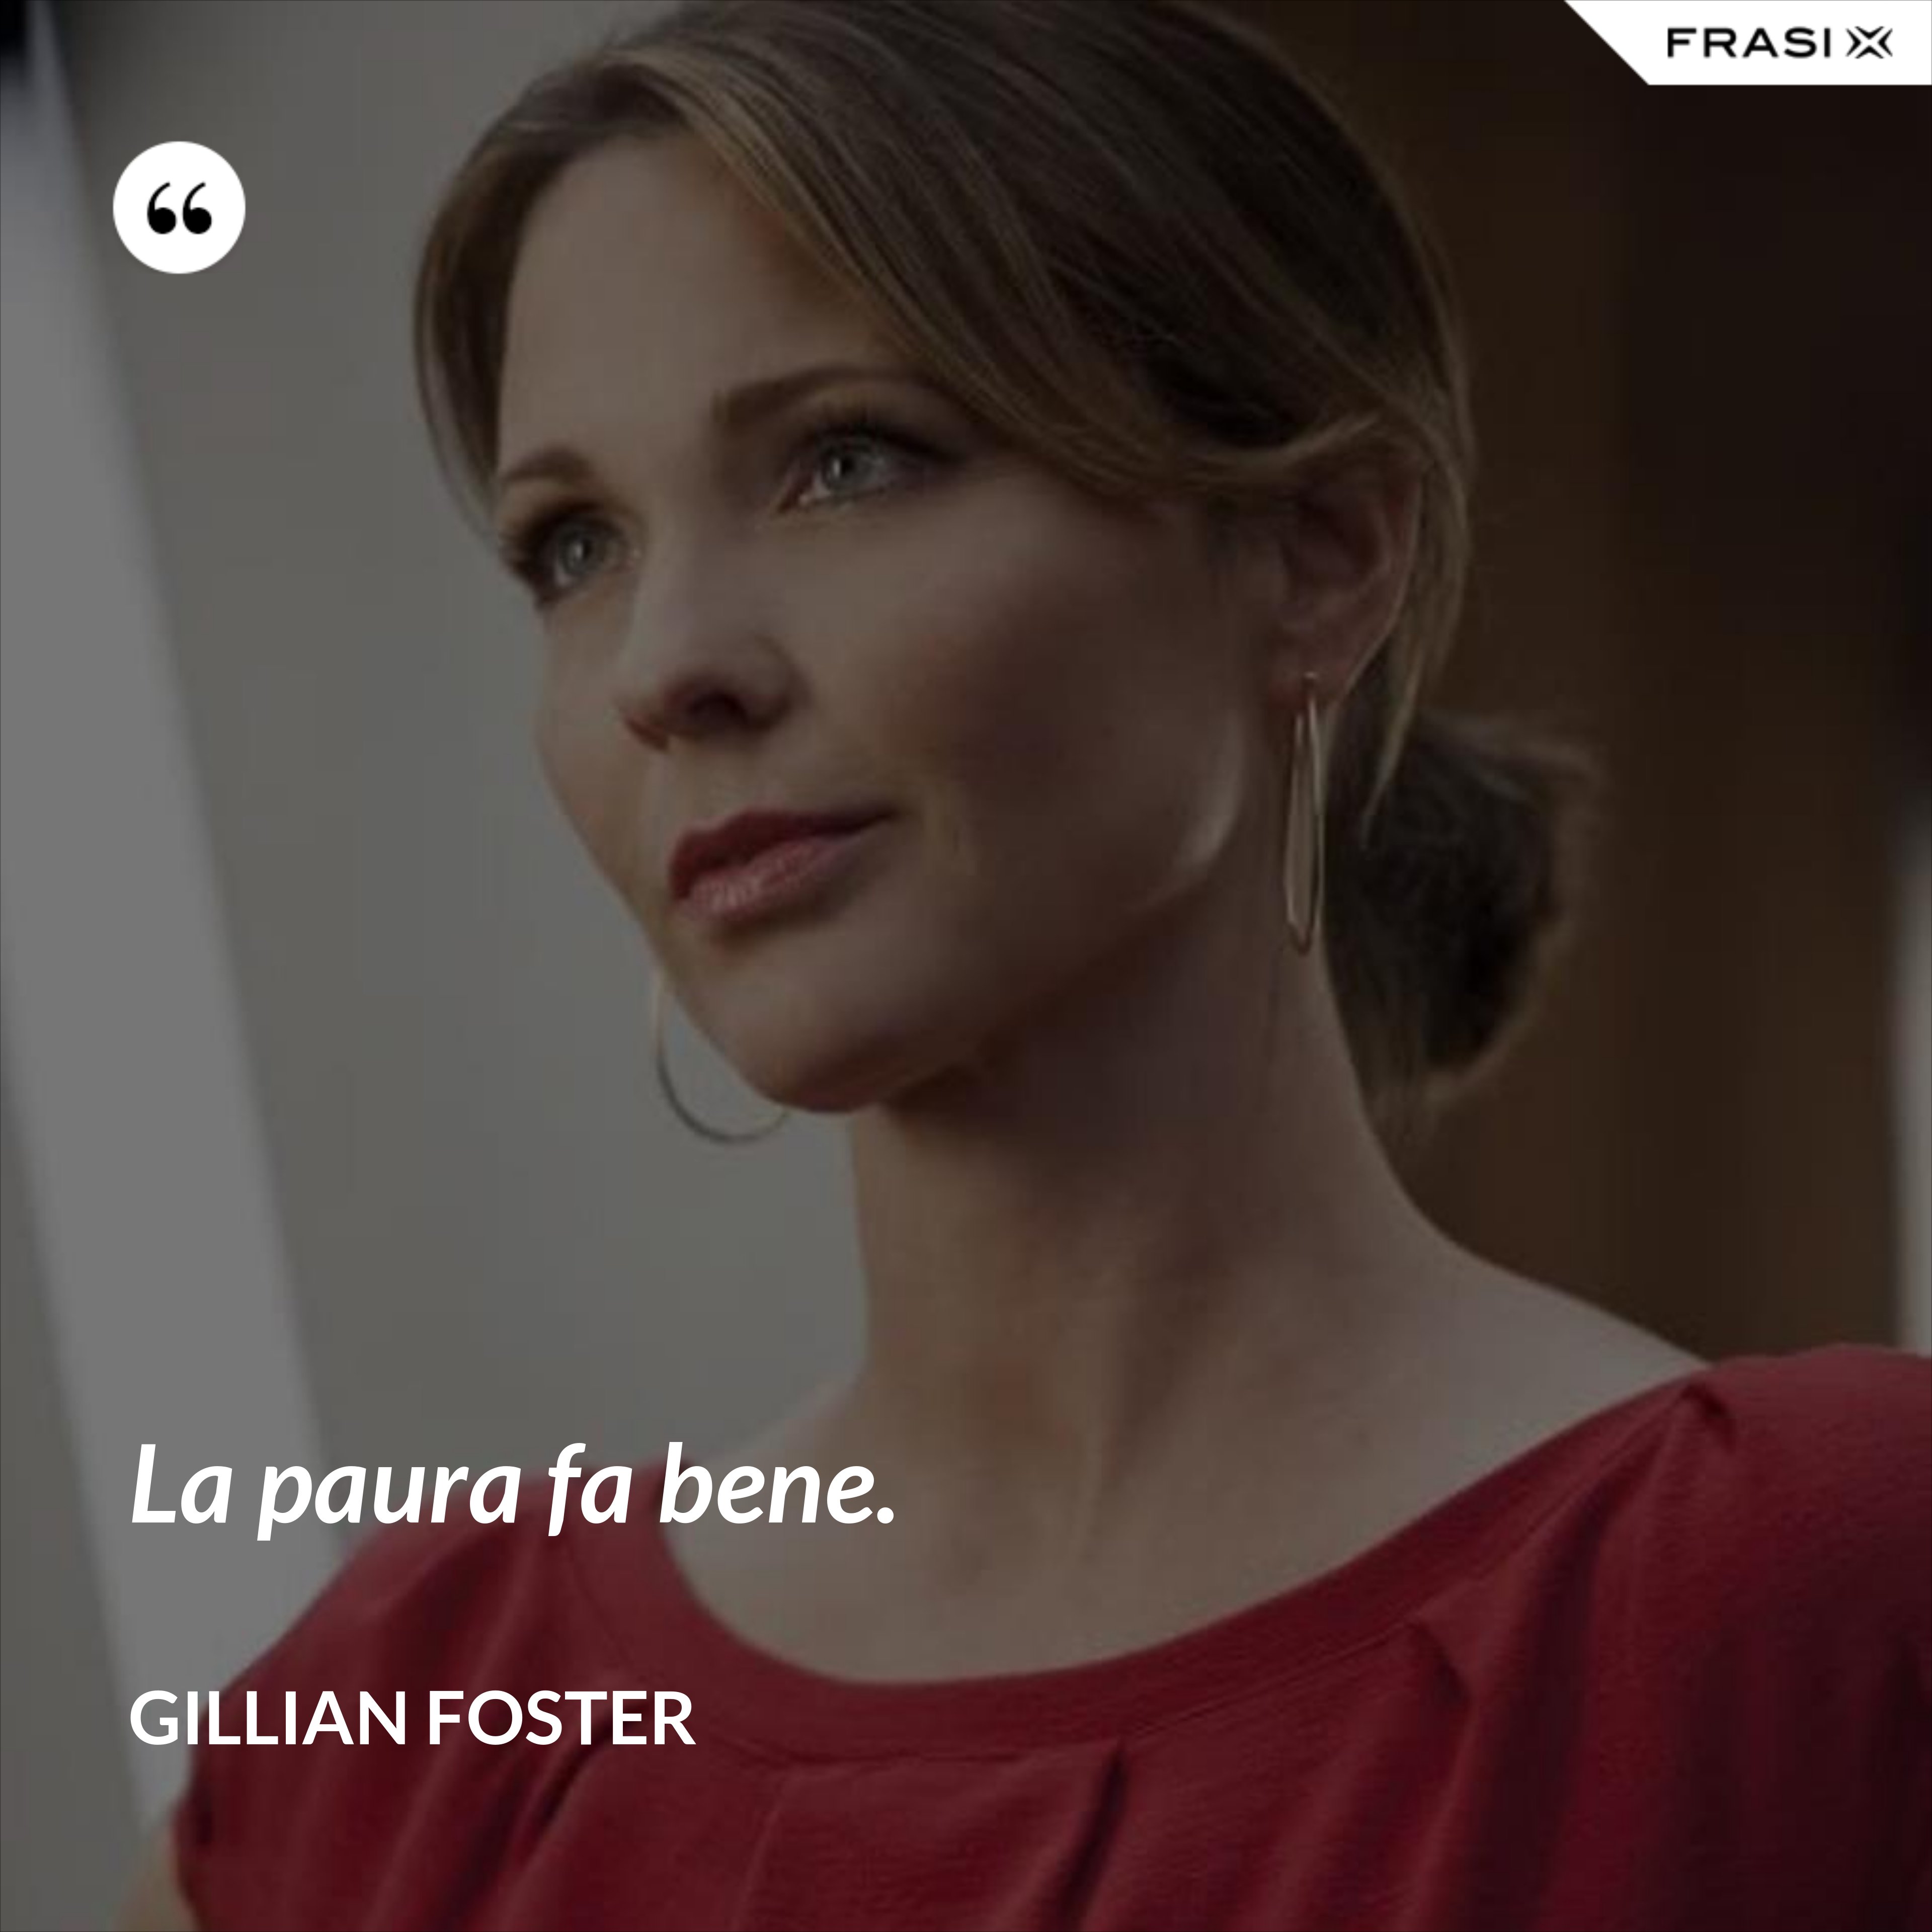 La paura fa bene. - Gillian Foster